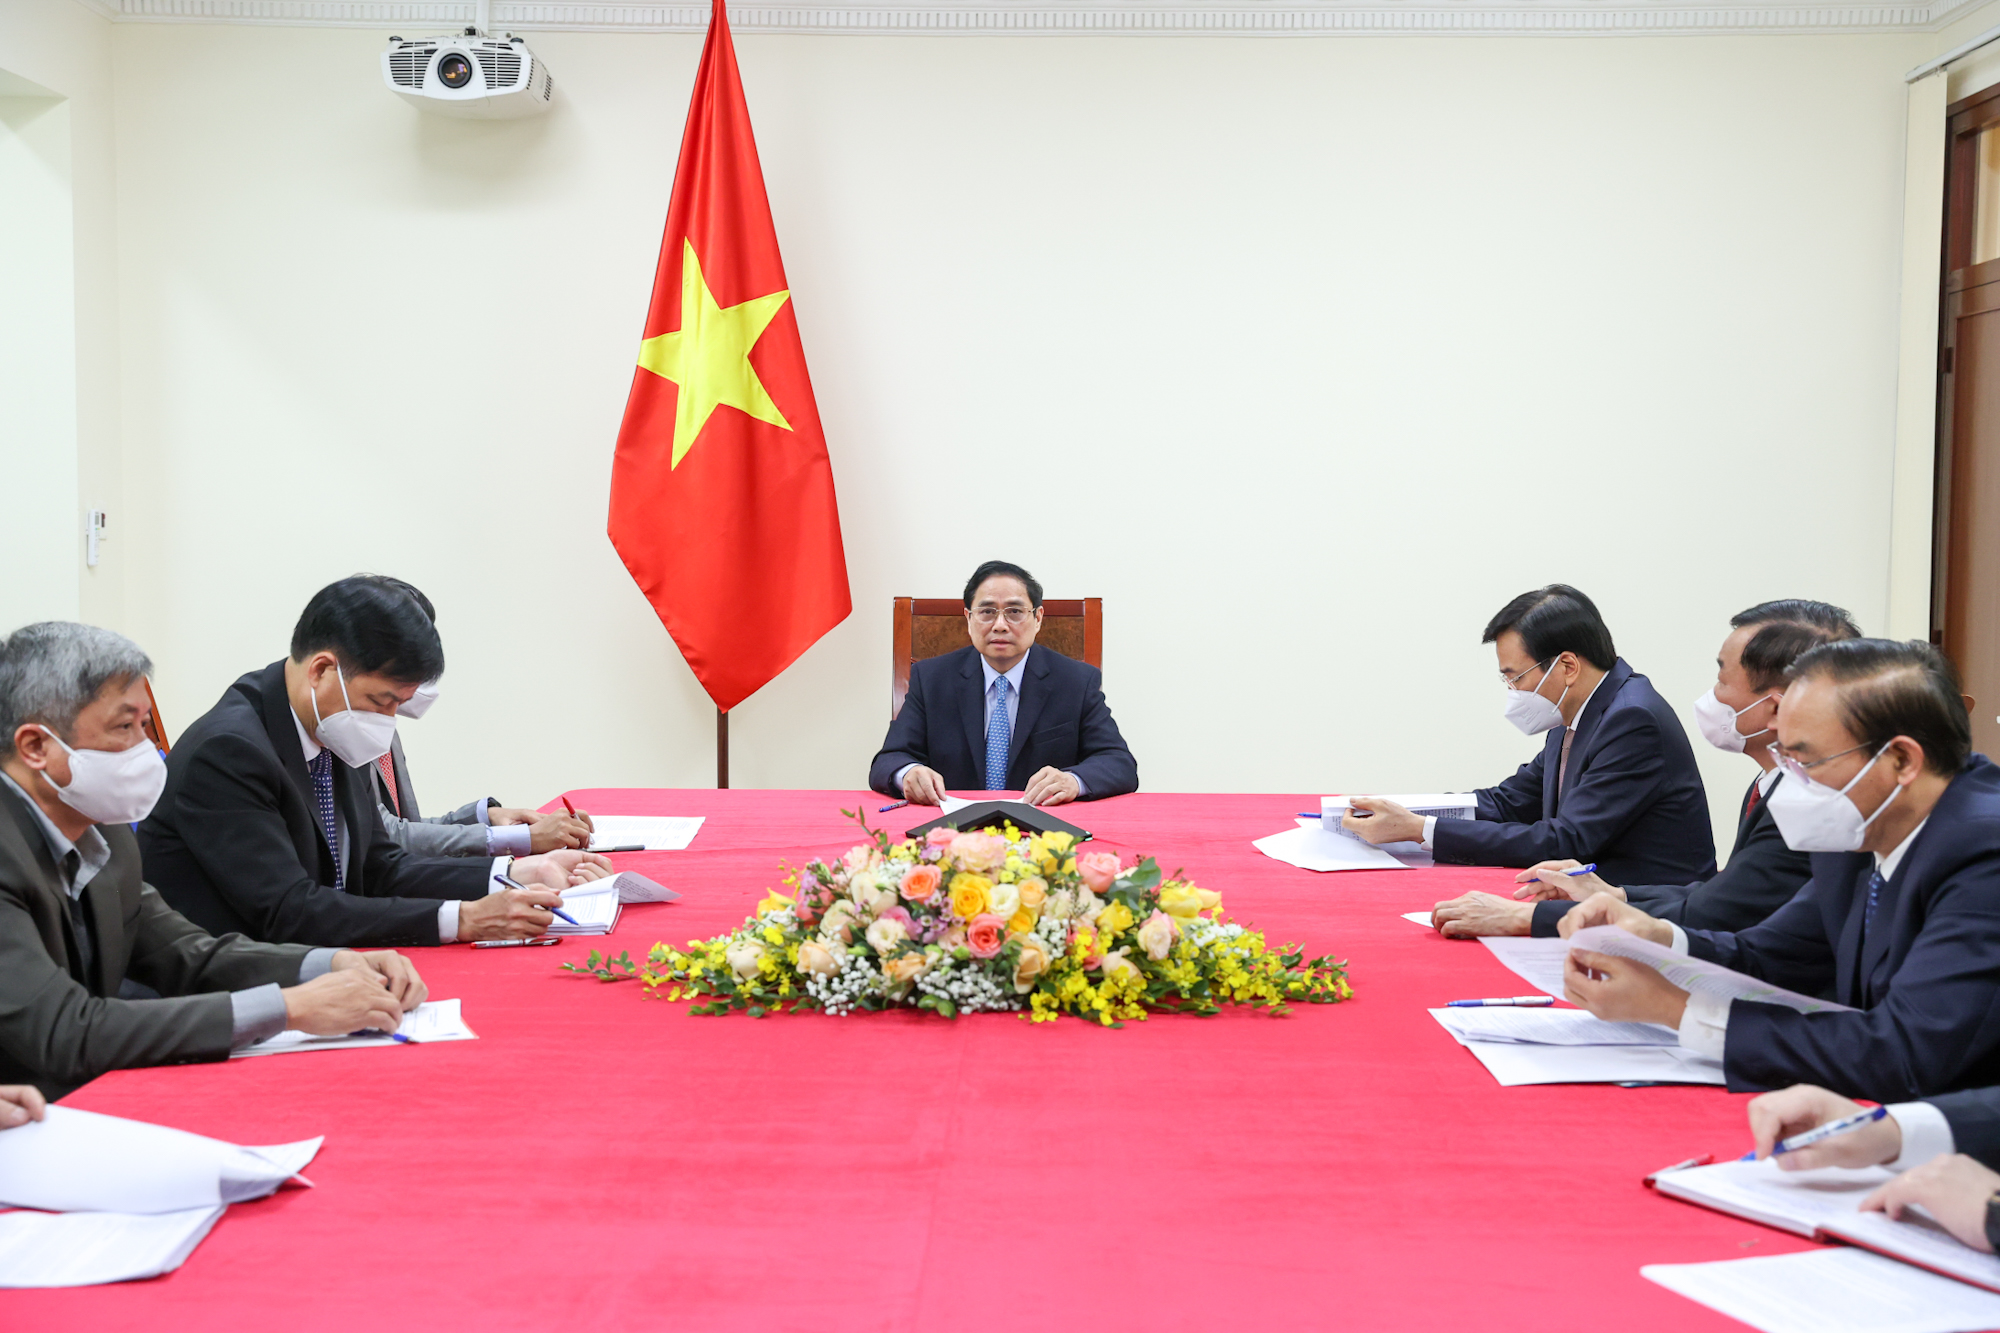 Thủ tướng Phạm Minh Chính điện đàm với Thủ tướng Trung Quốc, thúc đẩy quan hệ toàn diện, giải quyết vấn đề ách tắc hàng hóa tại cửa khẩu - Ảnh 2.